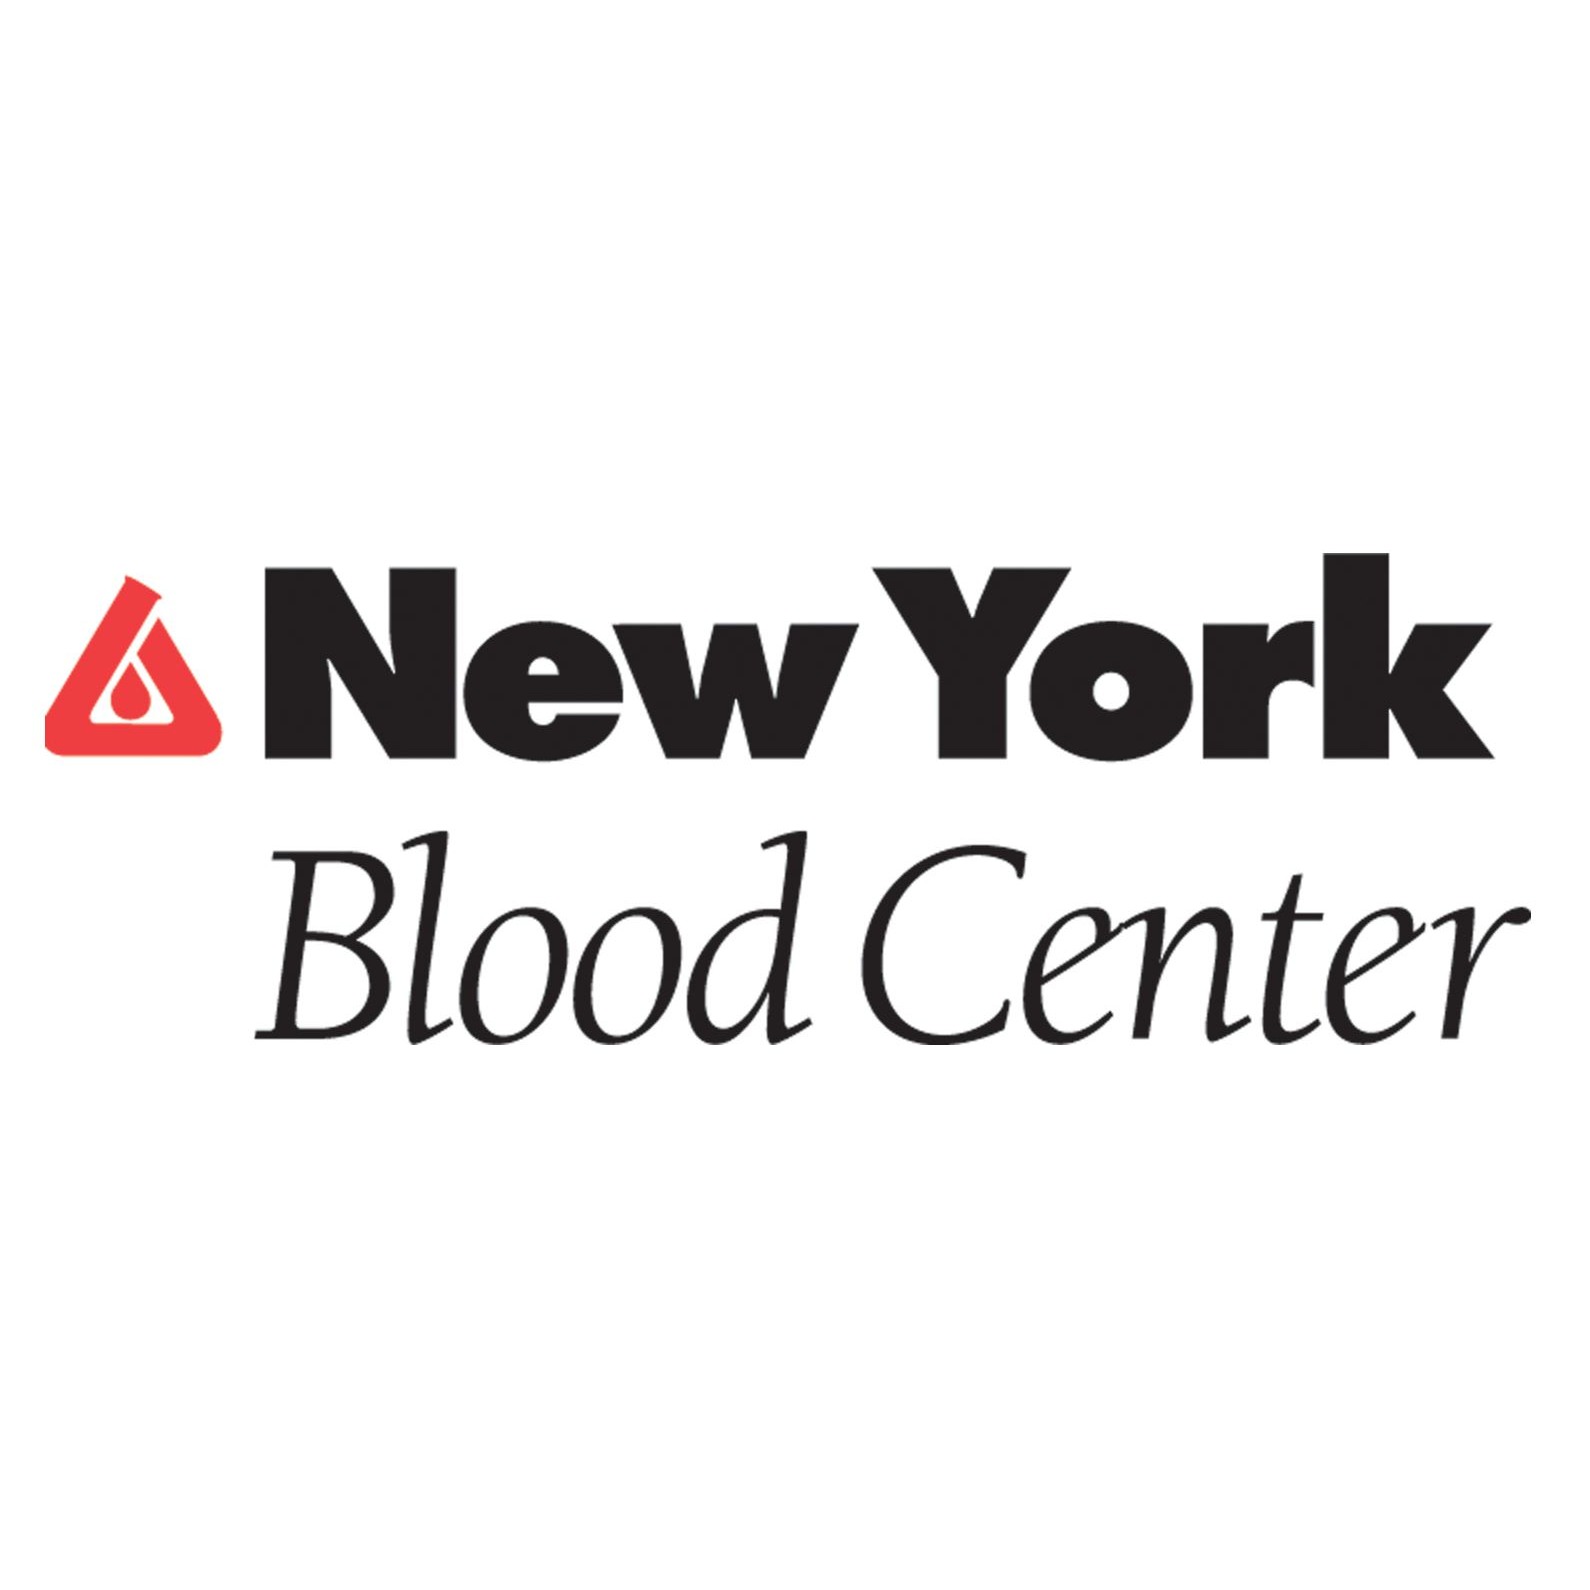 New York Blood Center - Bohemia Donor Center Logo